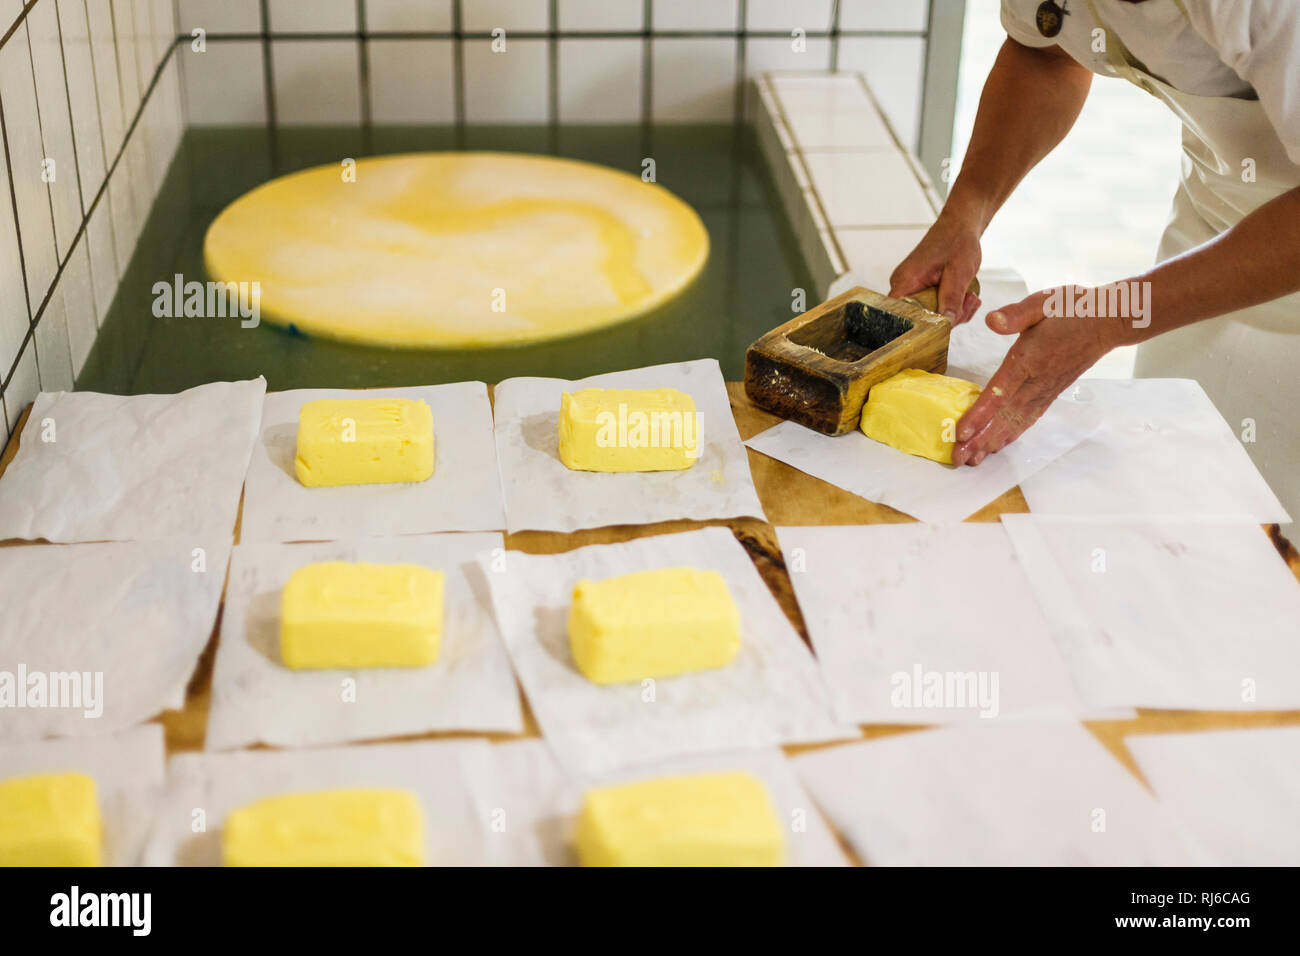 Herstellung von Butter, Verarbeitung, Form, Buttermodel, Stücke, einpacken Stock Photo